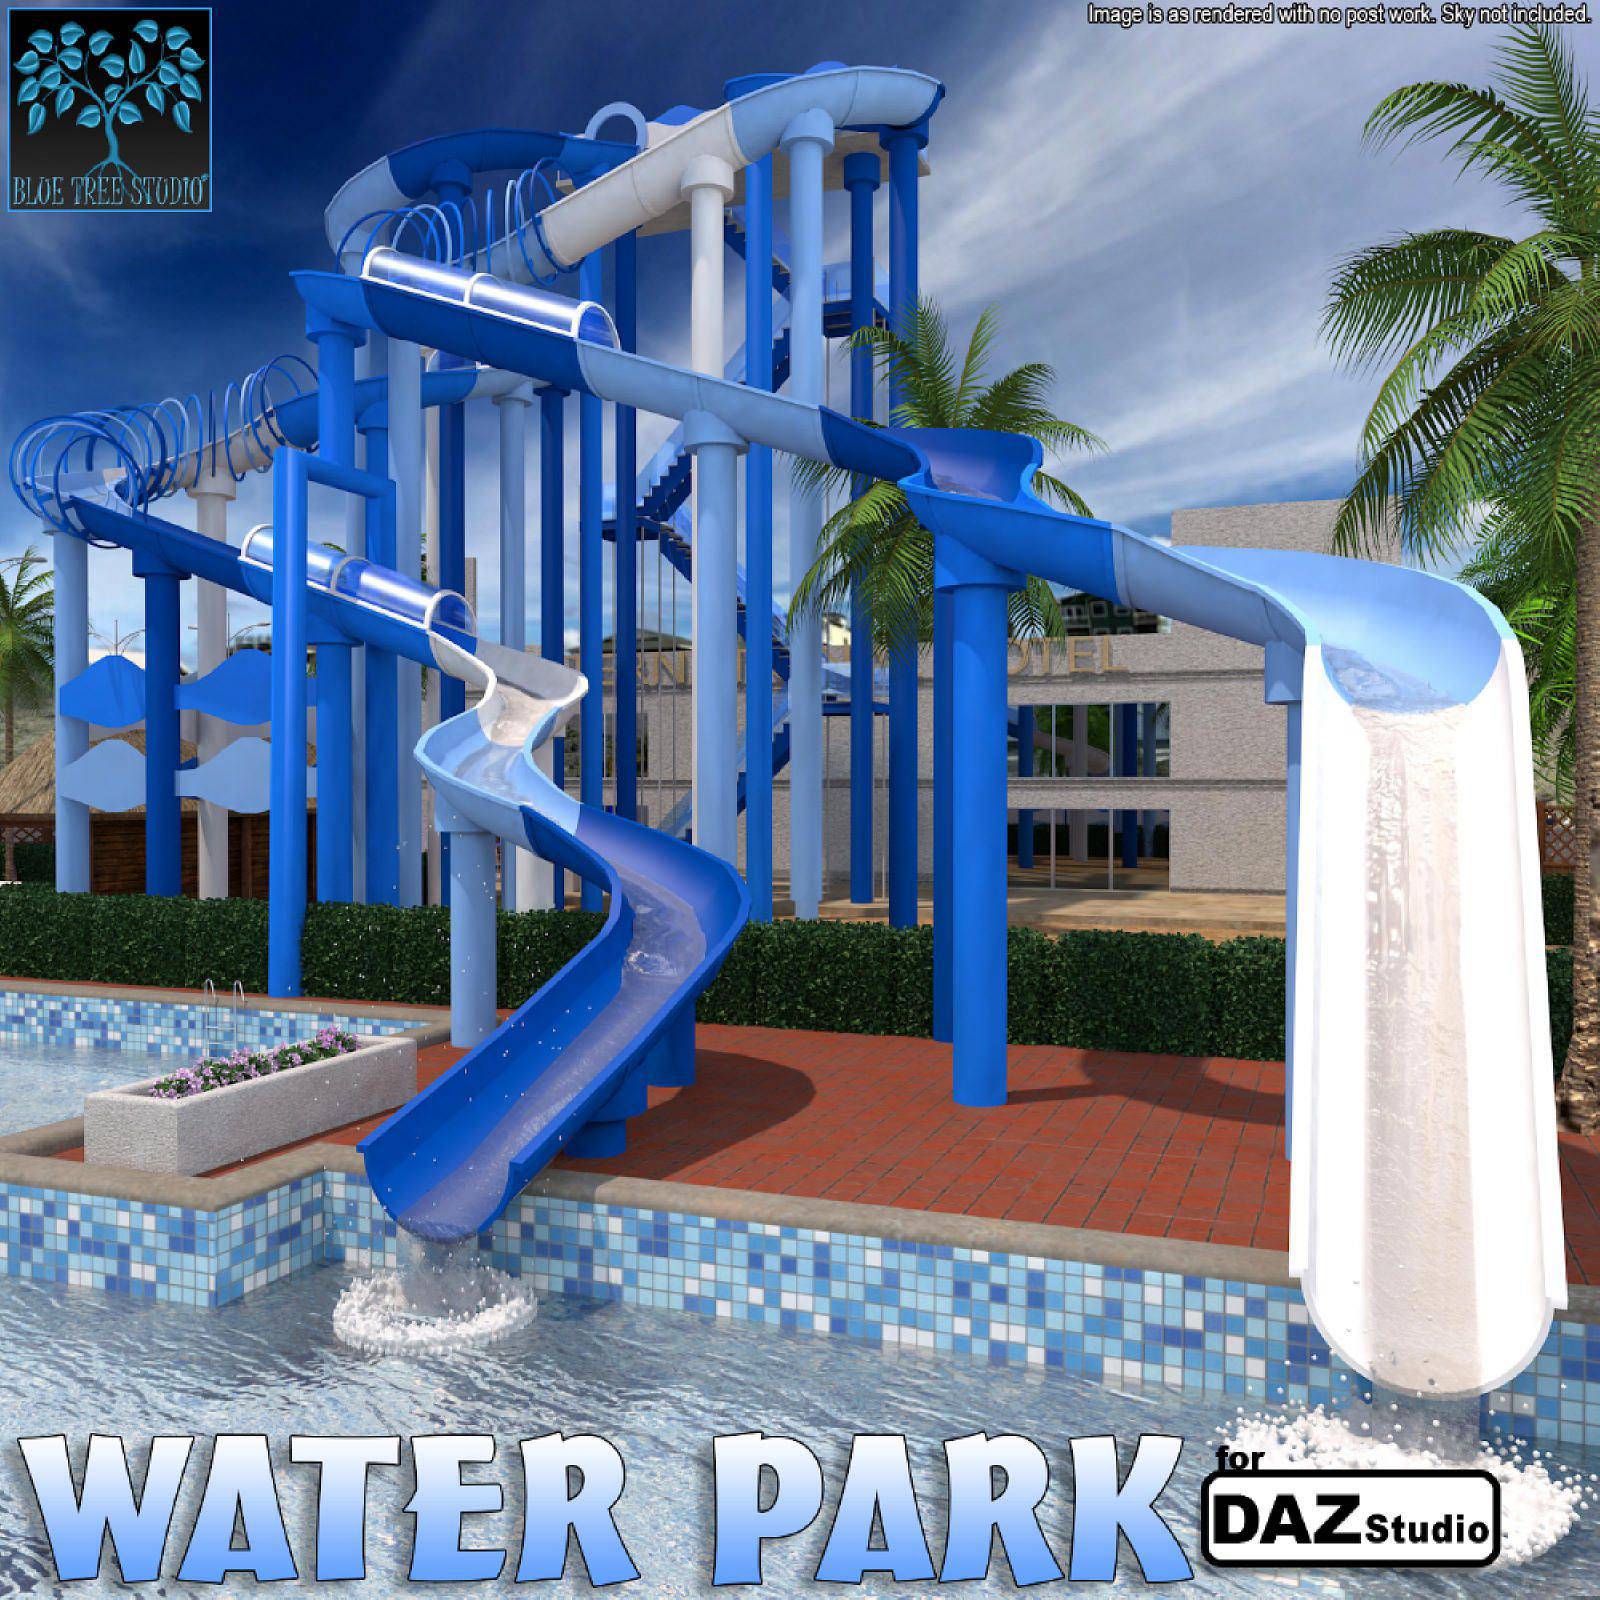 Water Park for Daz Studio_DAZ3DDL